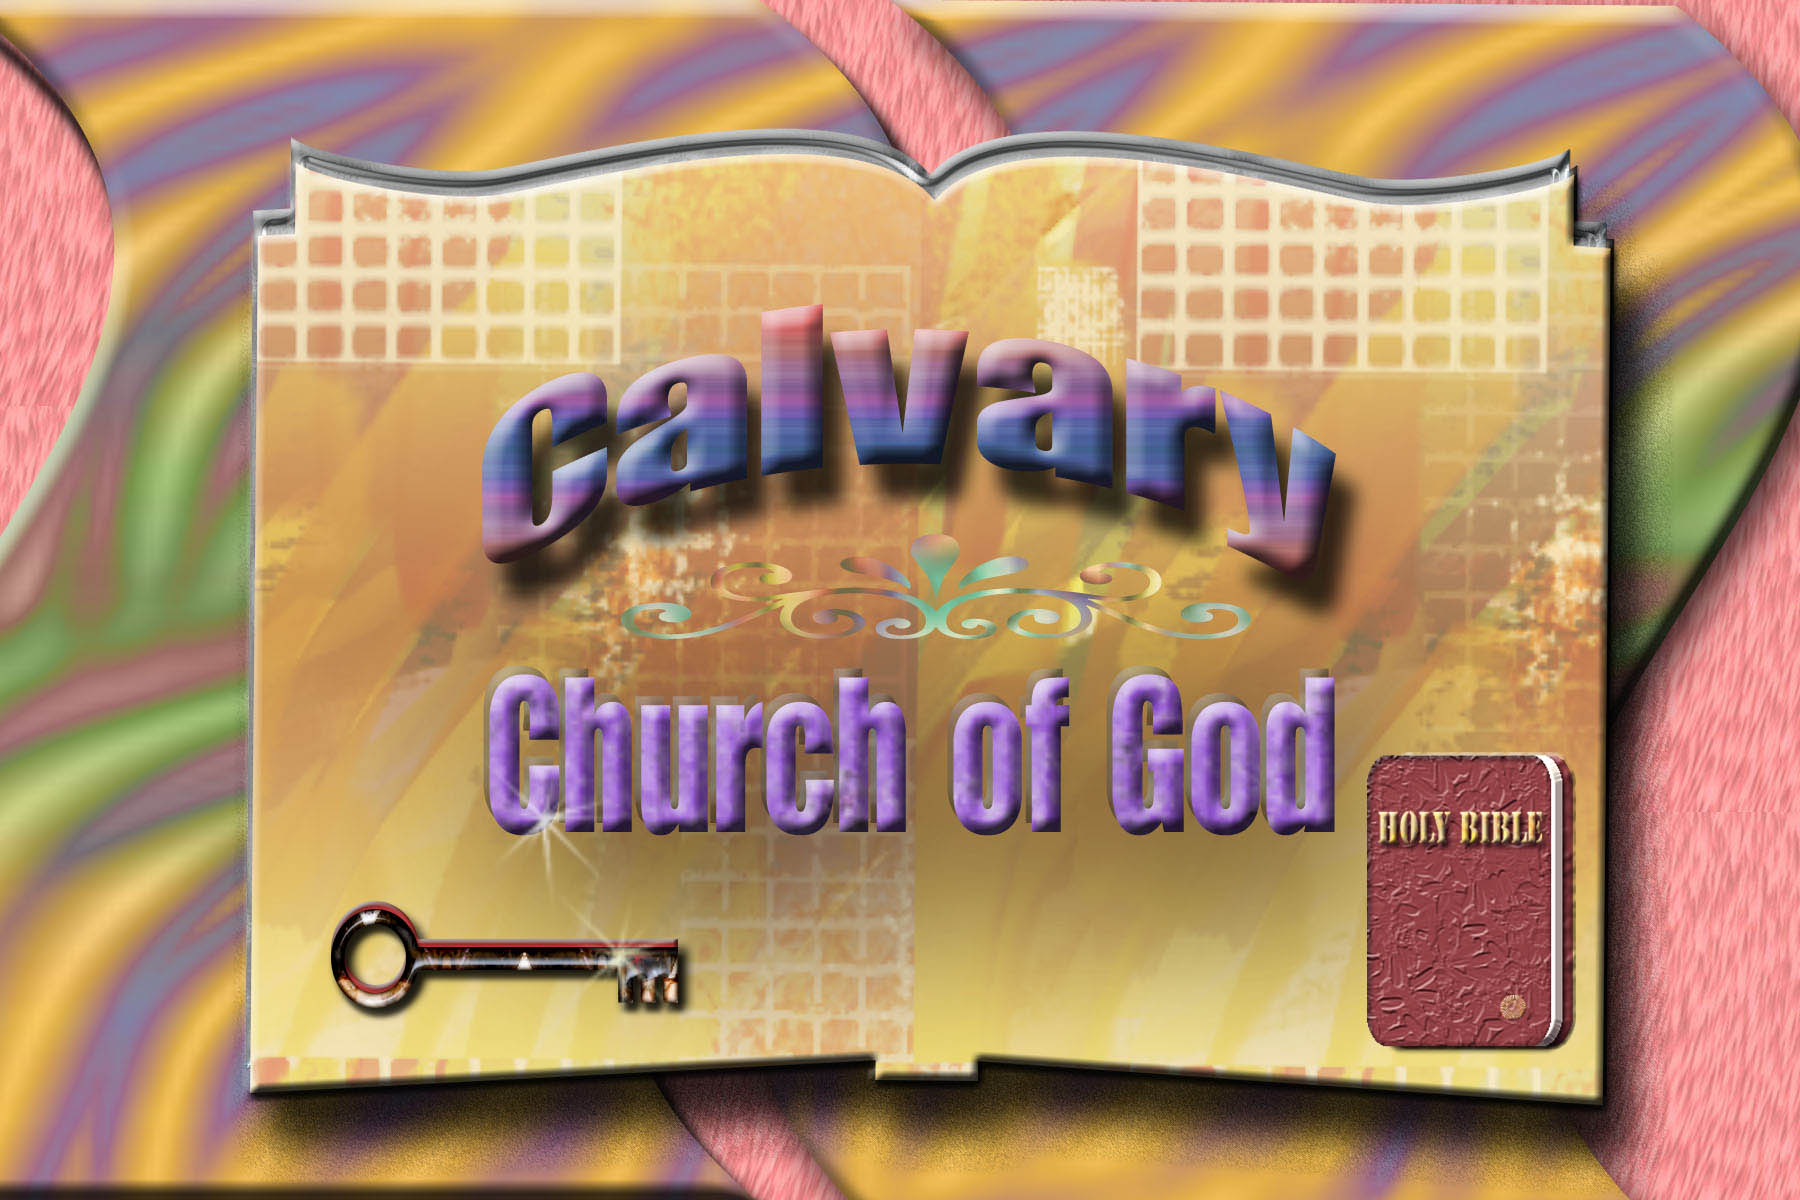 Calvary Church of God